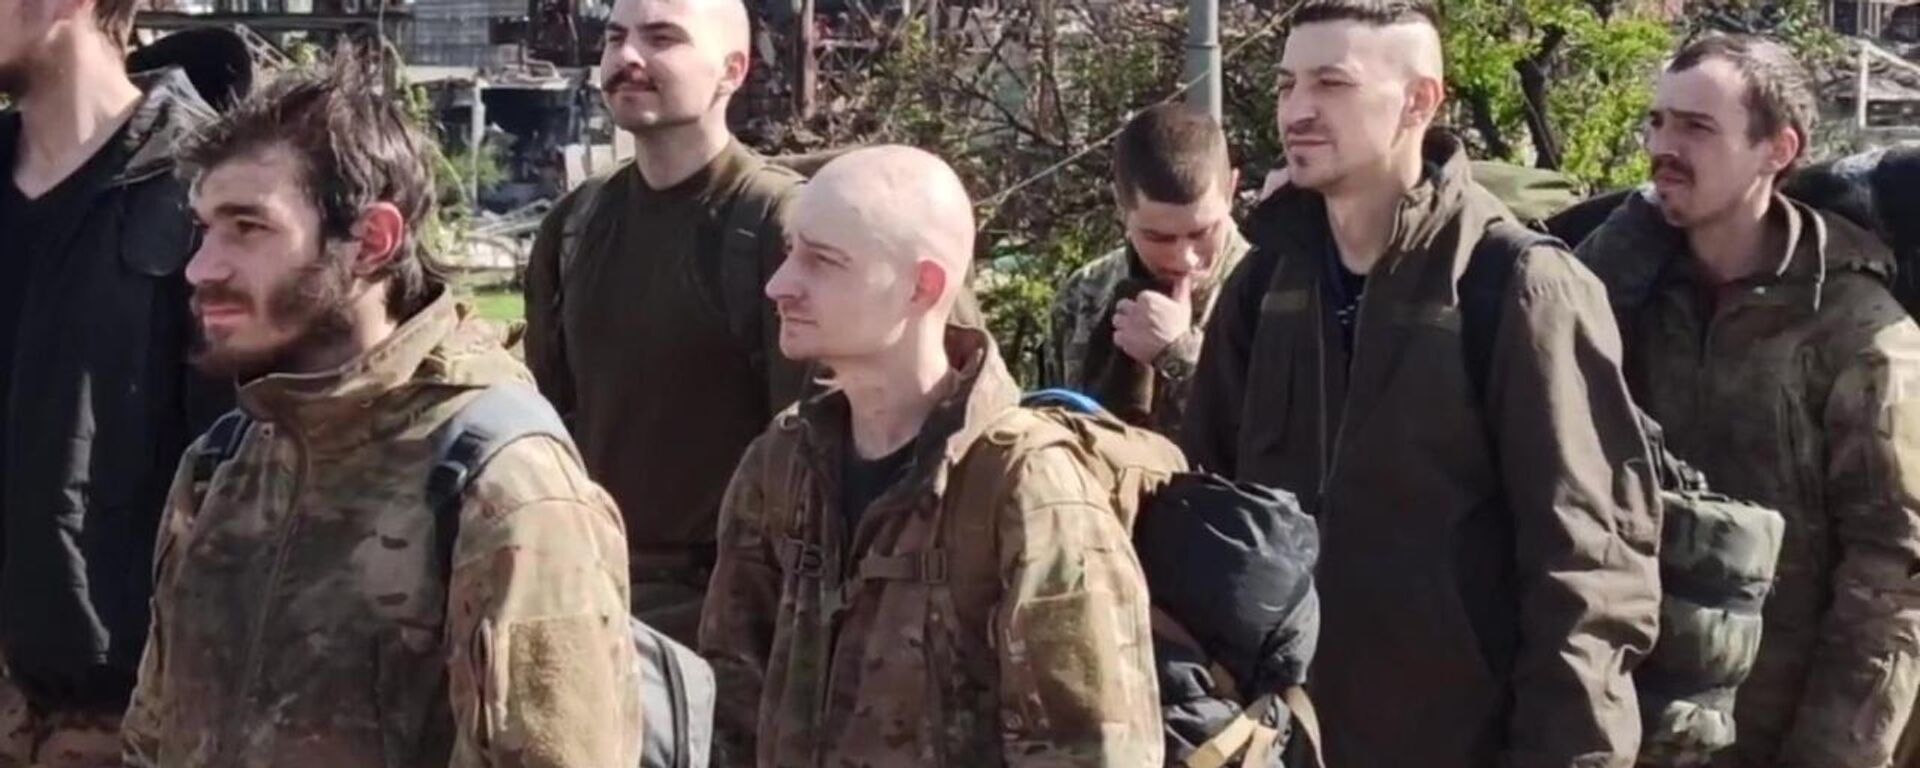 Último grupo de combatentes do Batalhão Azov neonazista rendido em Azovstal, Mariupol, foto publicada em 20 de maio de 2022 - Sputnik Brasil, 1920, 20.06.2022